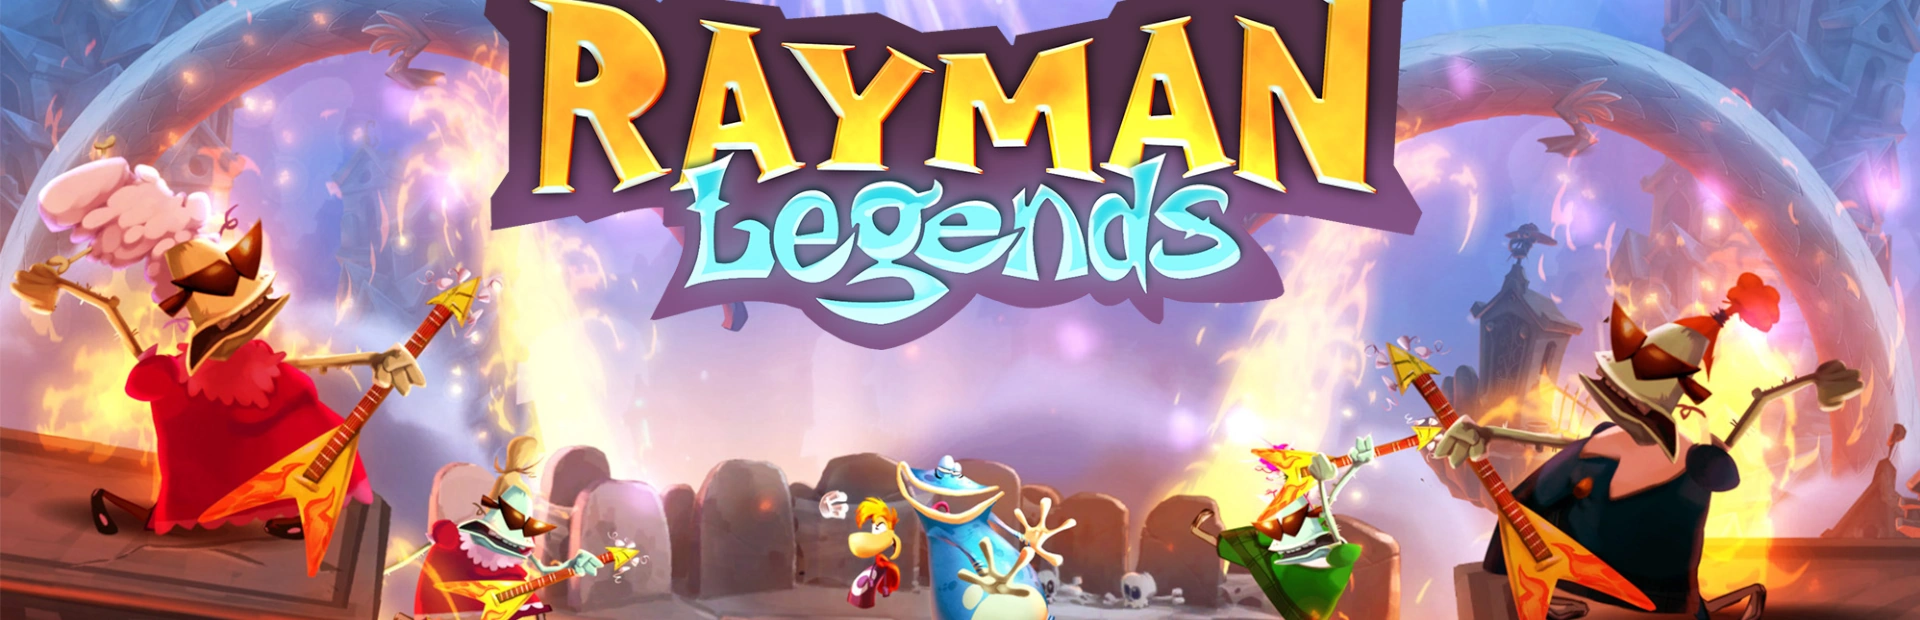 دانلود بازی Rayman Legends برای کامپیوتر | گیمباتو